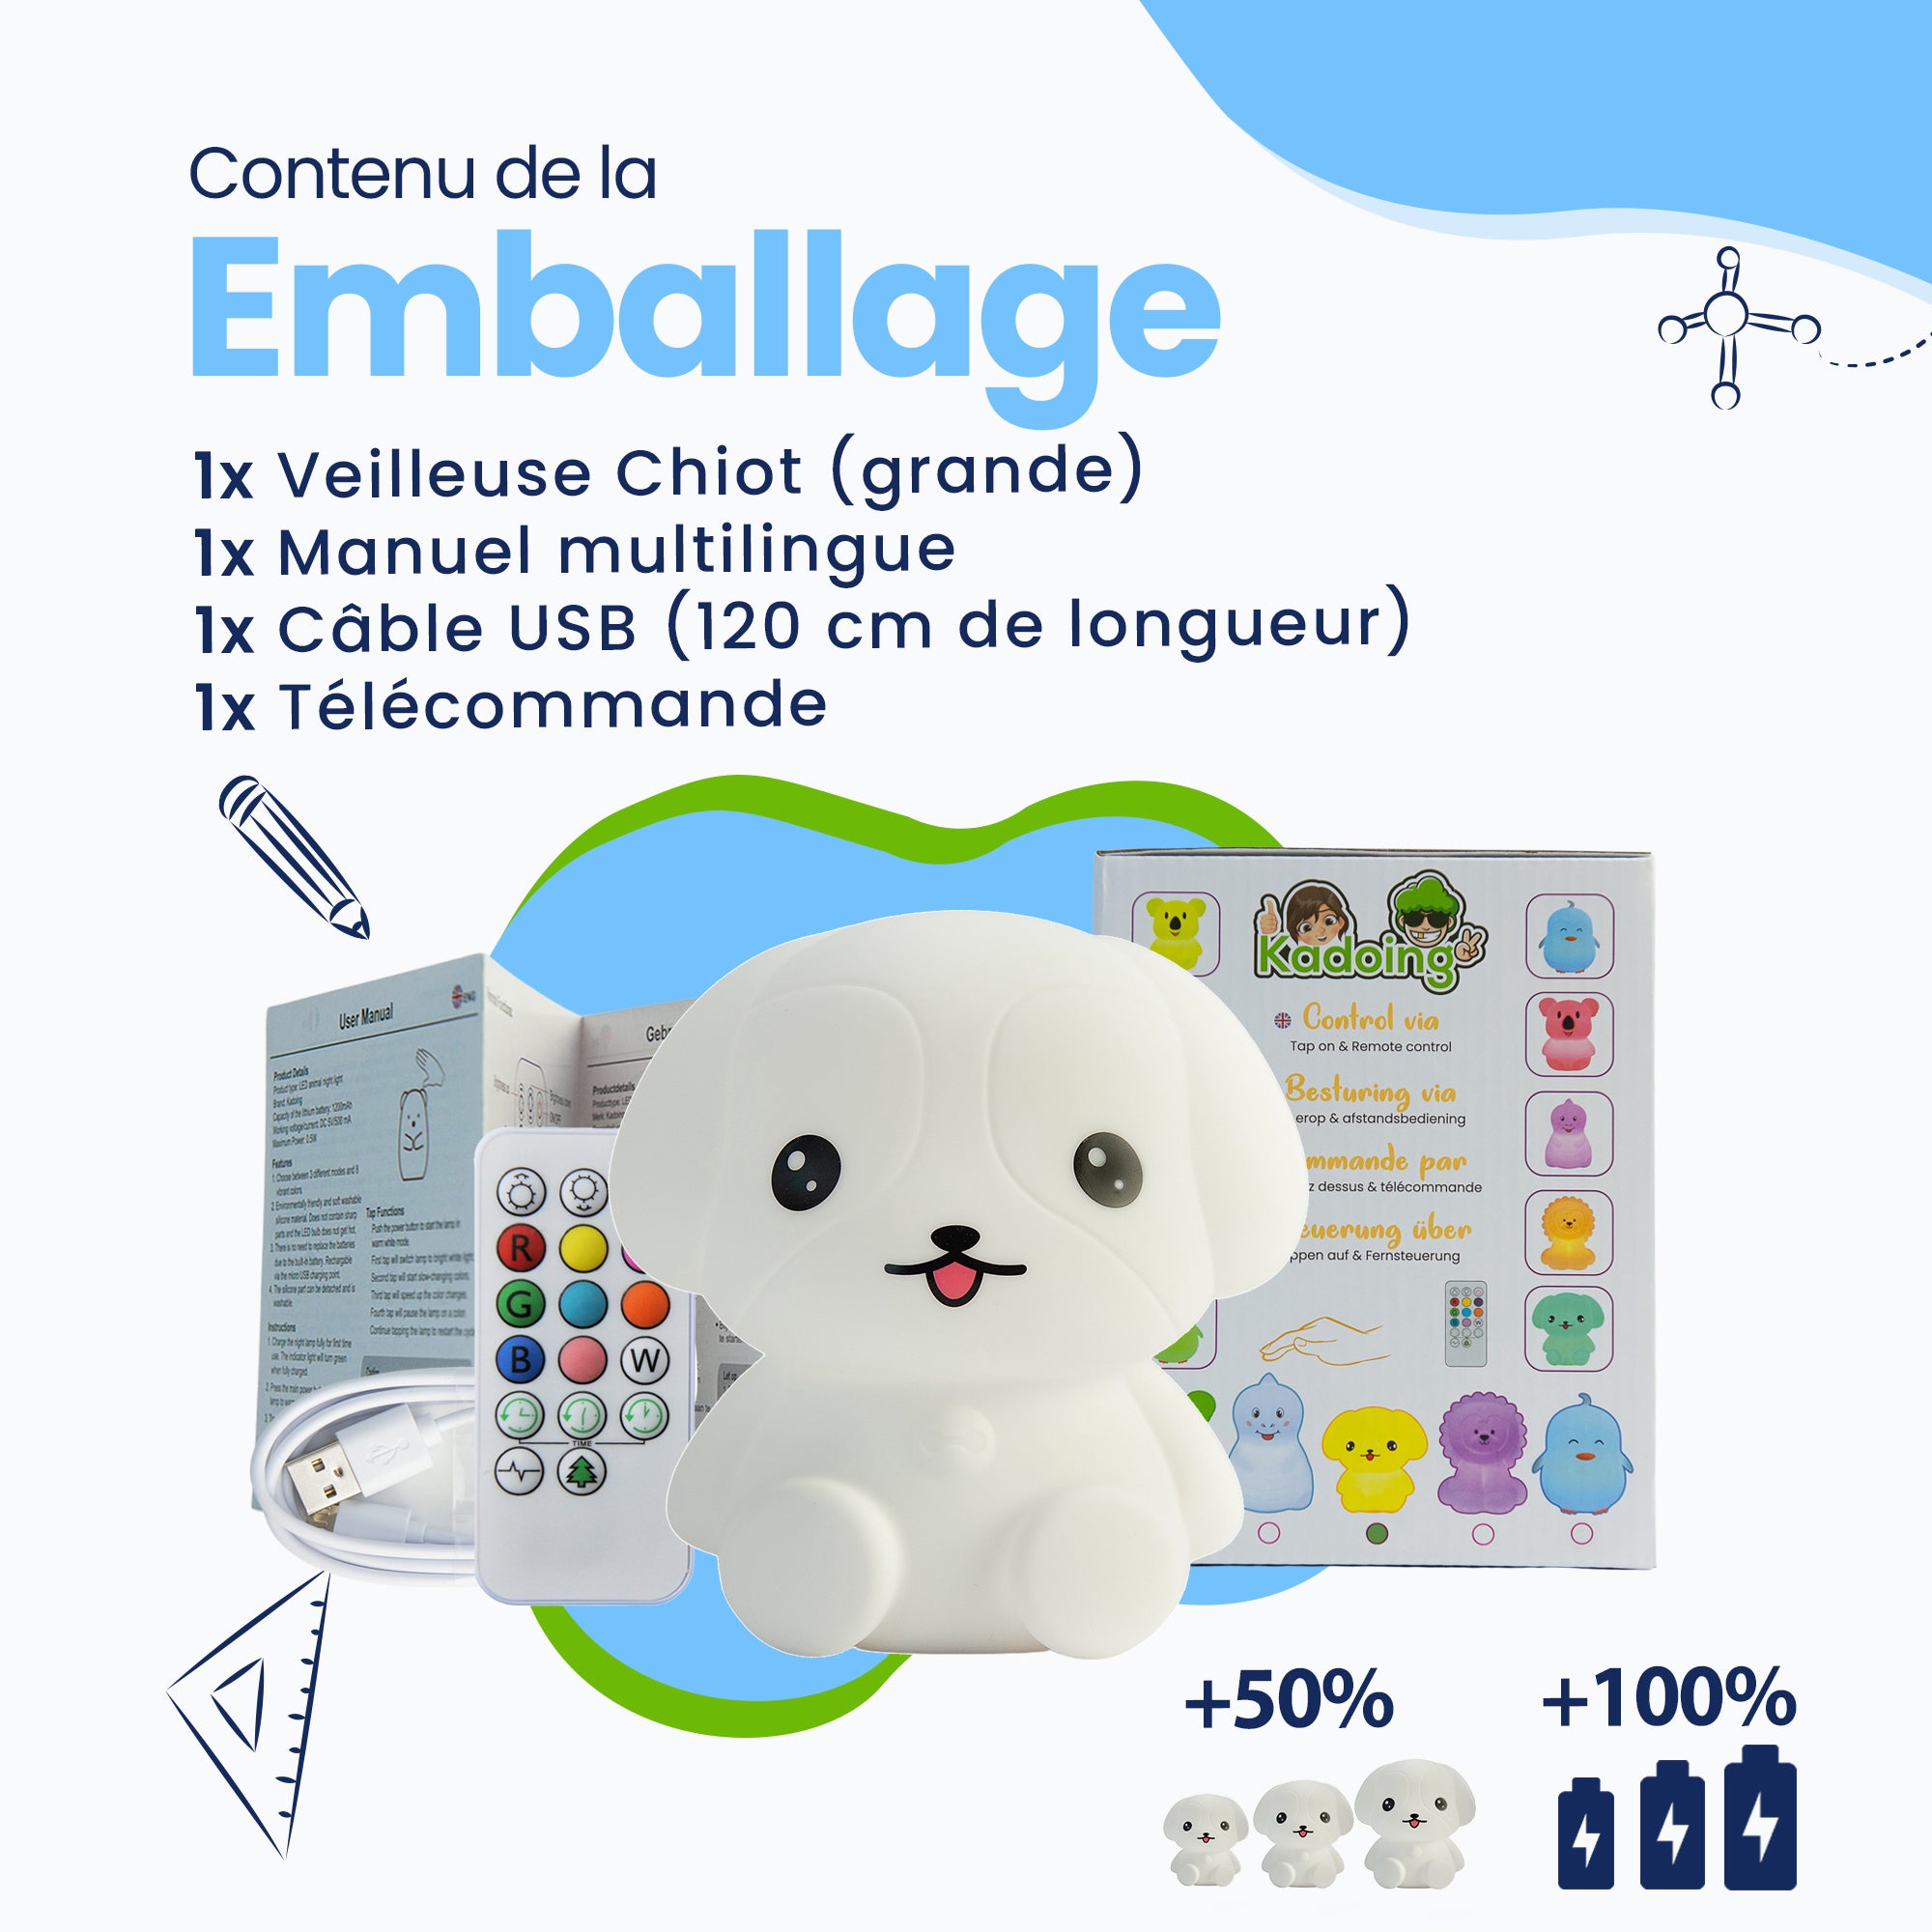 Contenu de l'emballage - Veilleuse Puppy (grande) - Manuel multilingue - Câble USB (longueur 120 cm) - Télécommande